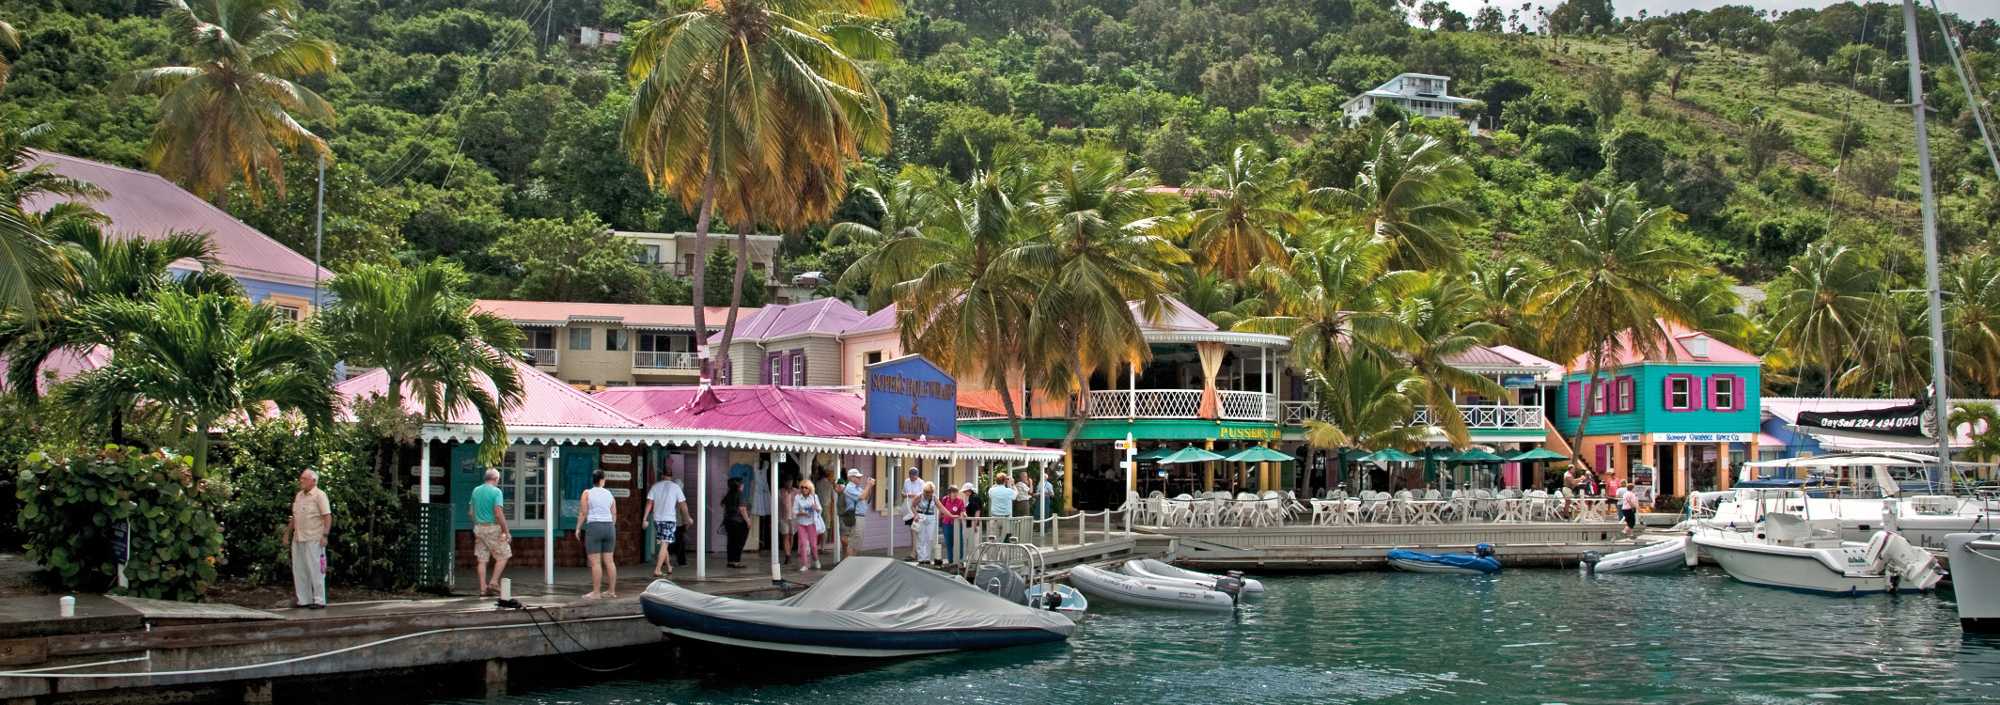 Marina mit bunten Holzhäusern auf den British Virgin Islands